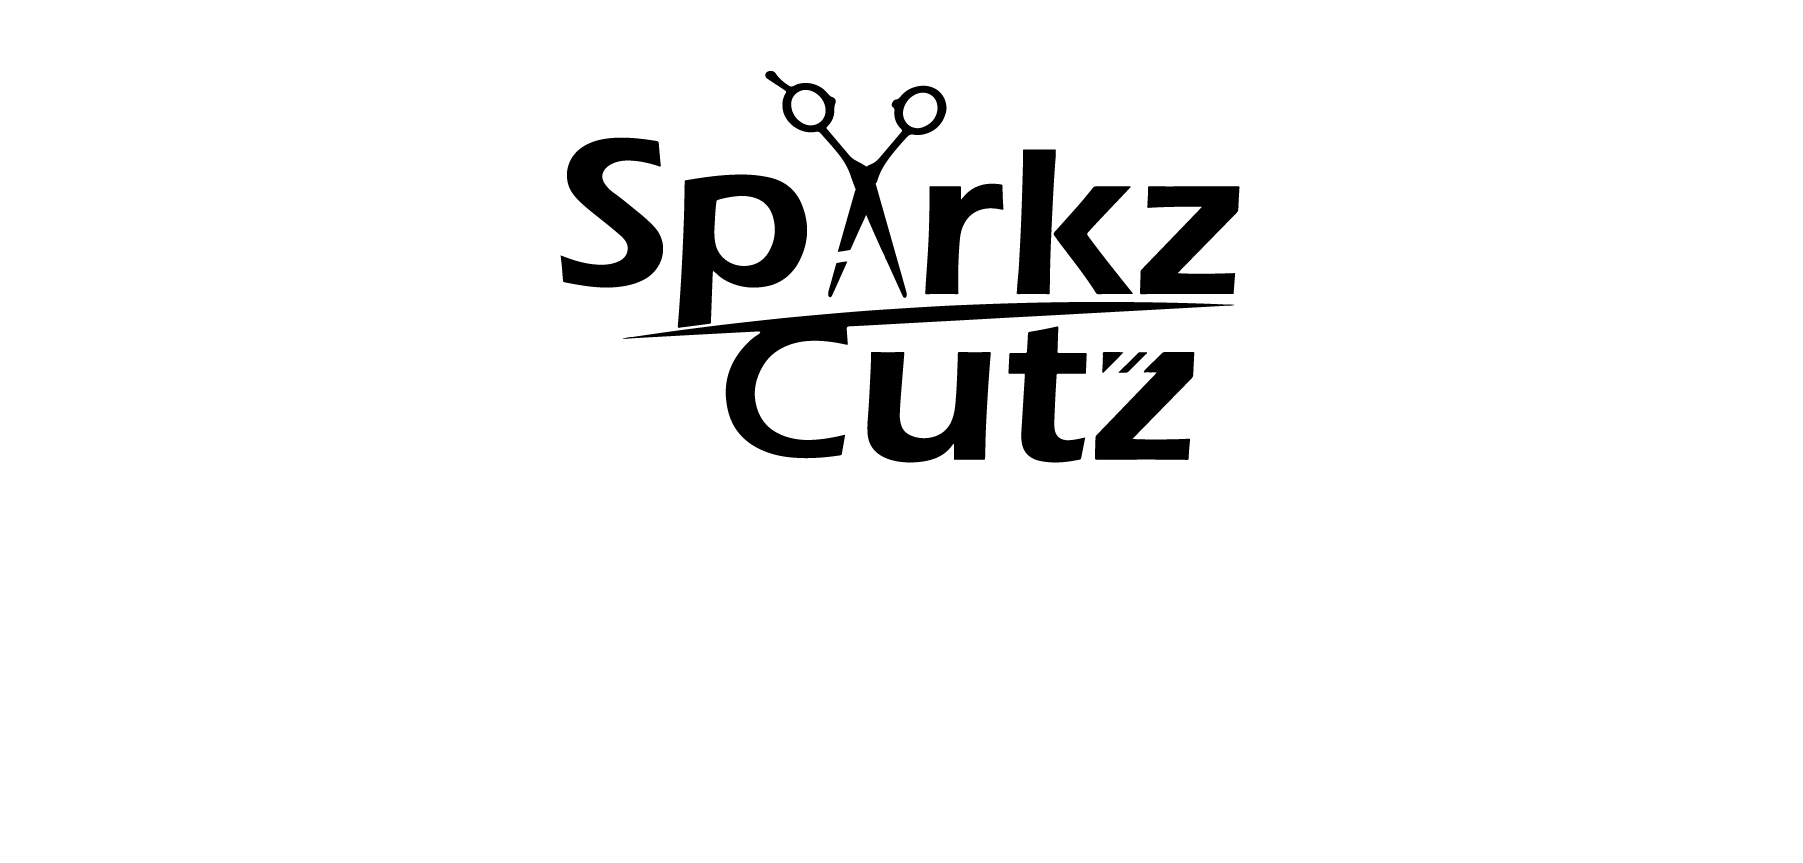 SparkzCutz LivingROOM 122